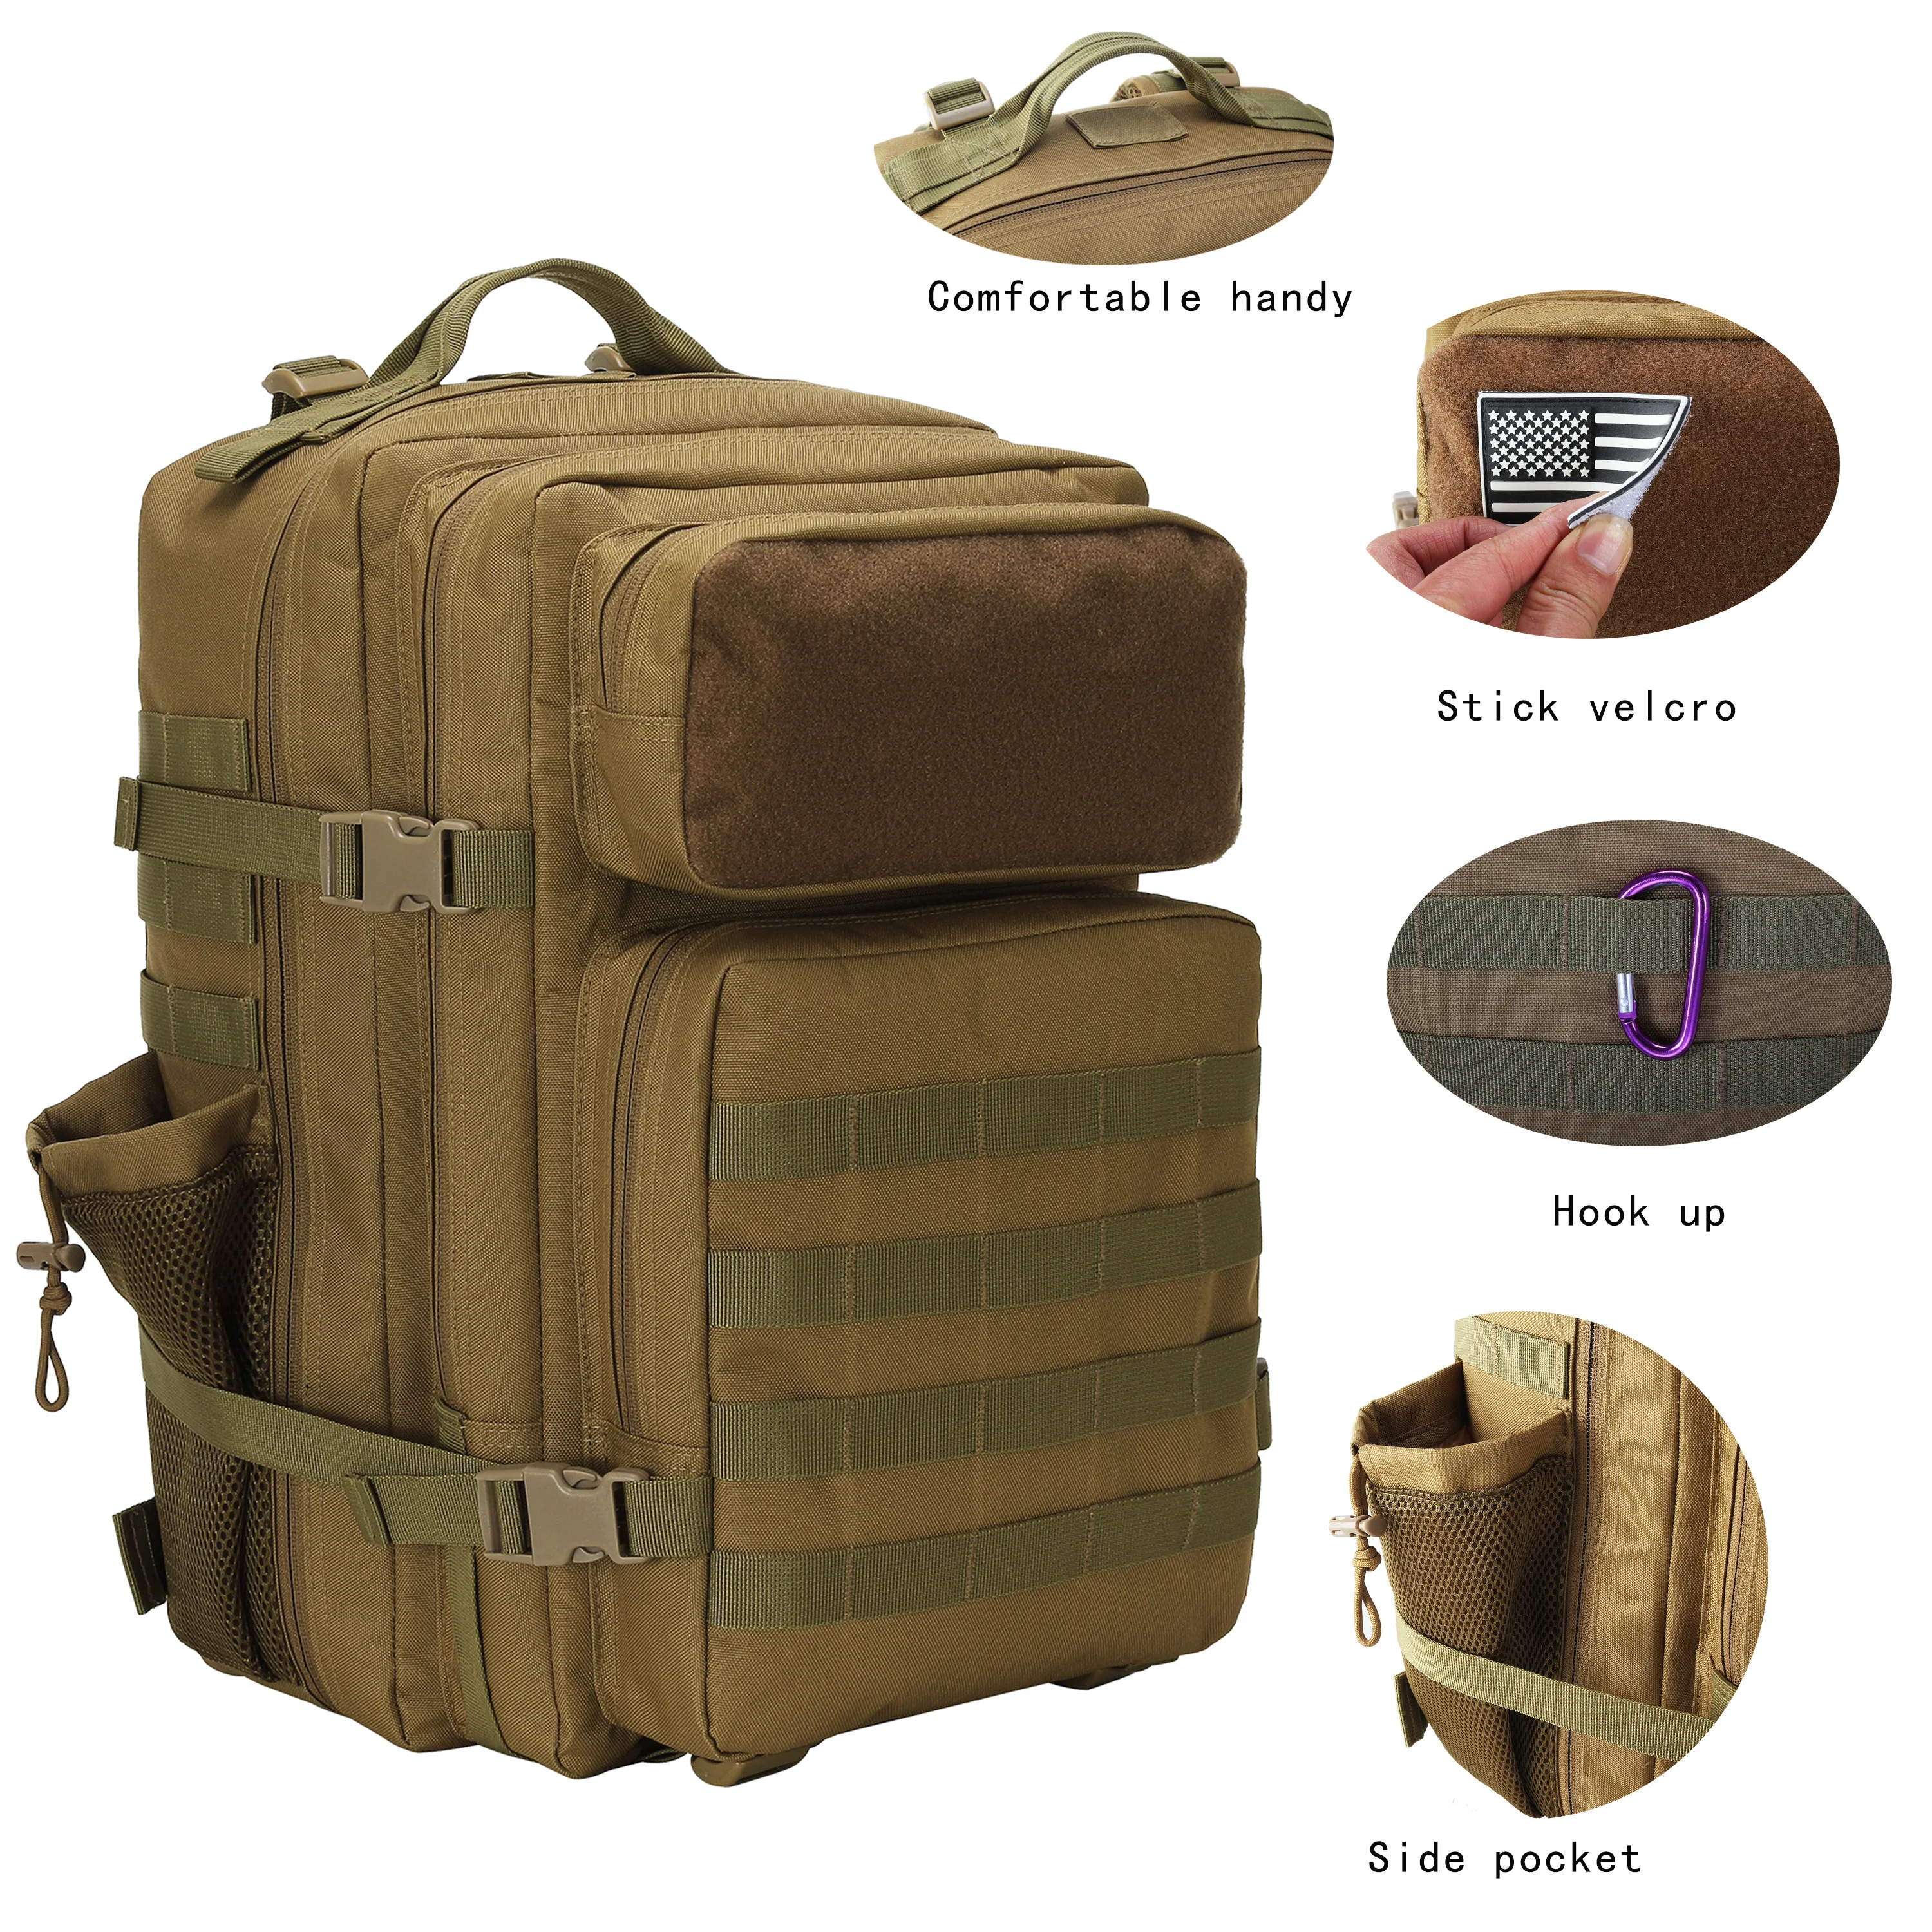 

LUPU 45l Wholesale Outdoor Waterproof Hiking Survival Bag Black Tactical Backpack